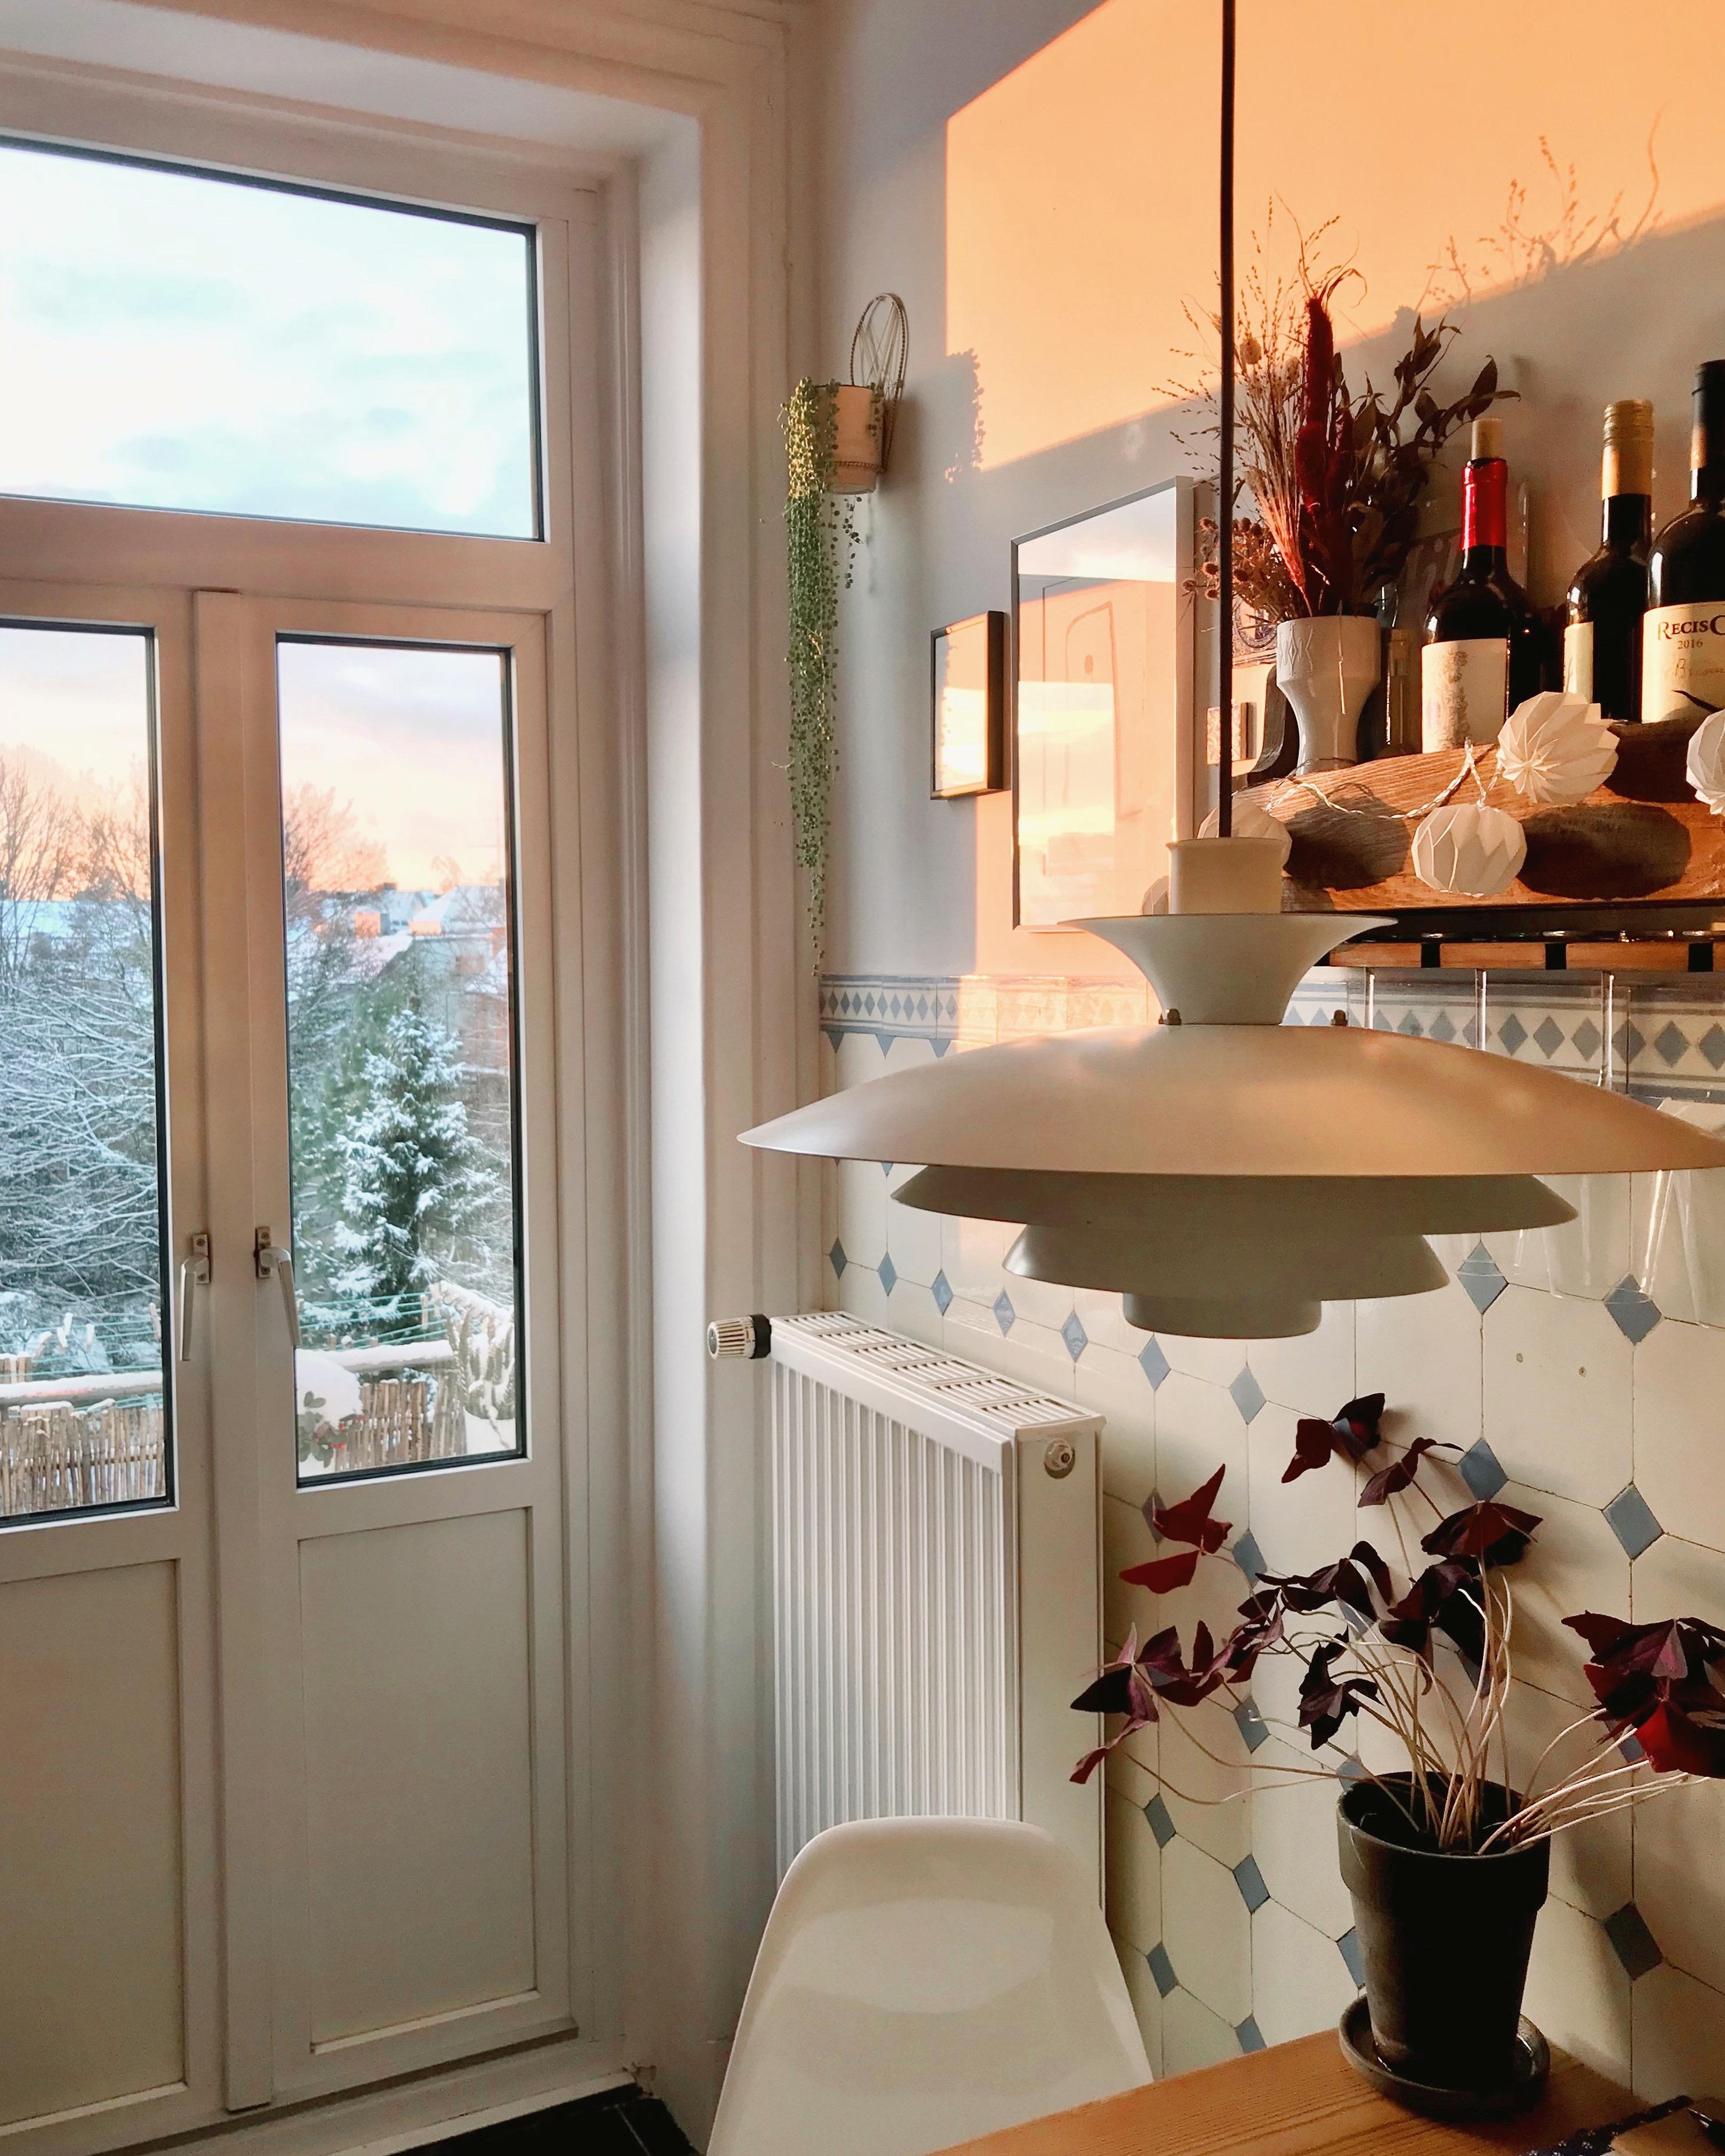 Noch ein Winterwonderwochenende vor der Tür?! #altbauliebe #fliesenliebe #küche #morgensonne #winterwonderland #hamburg